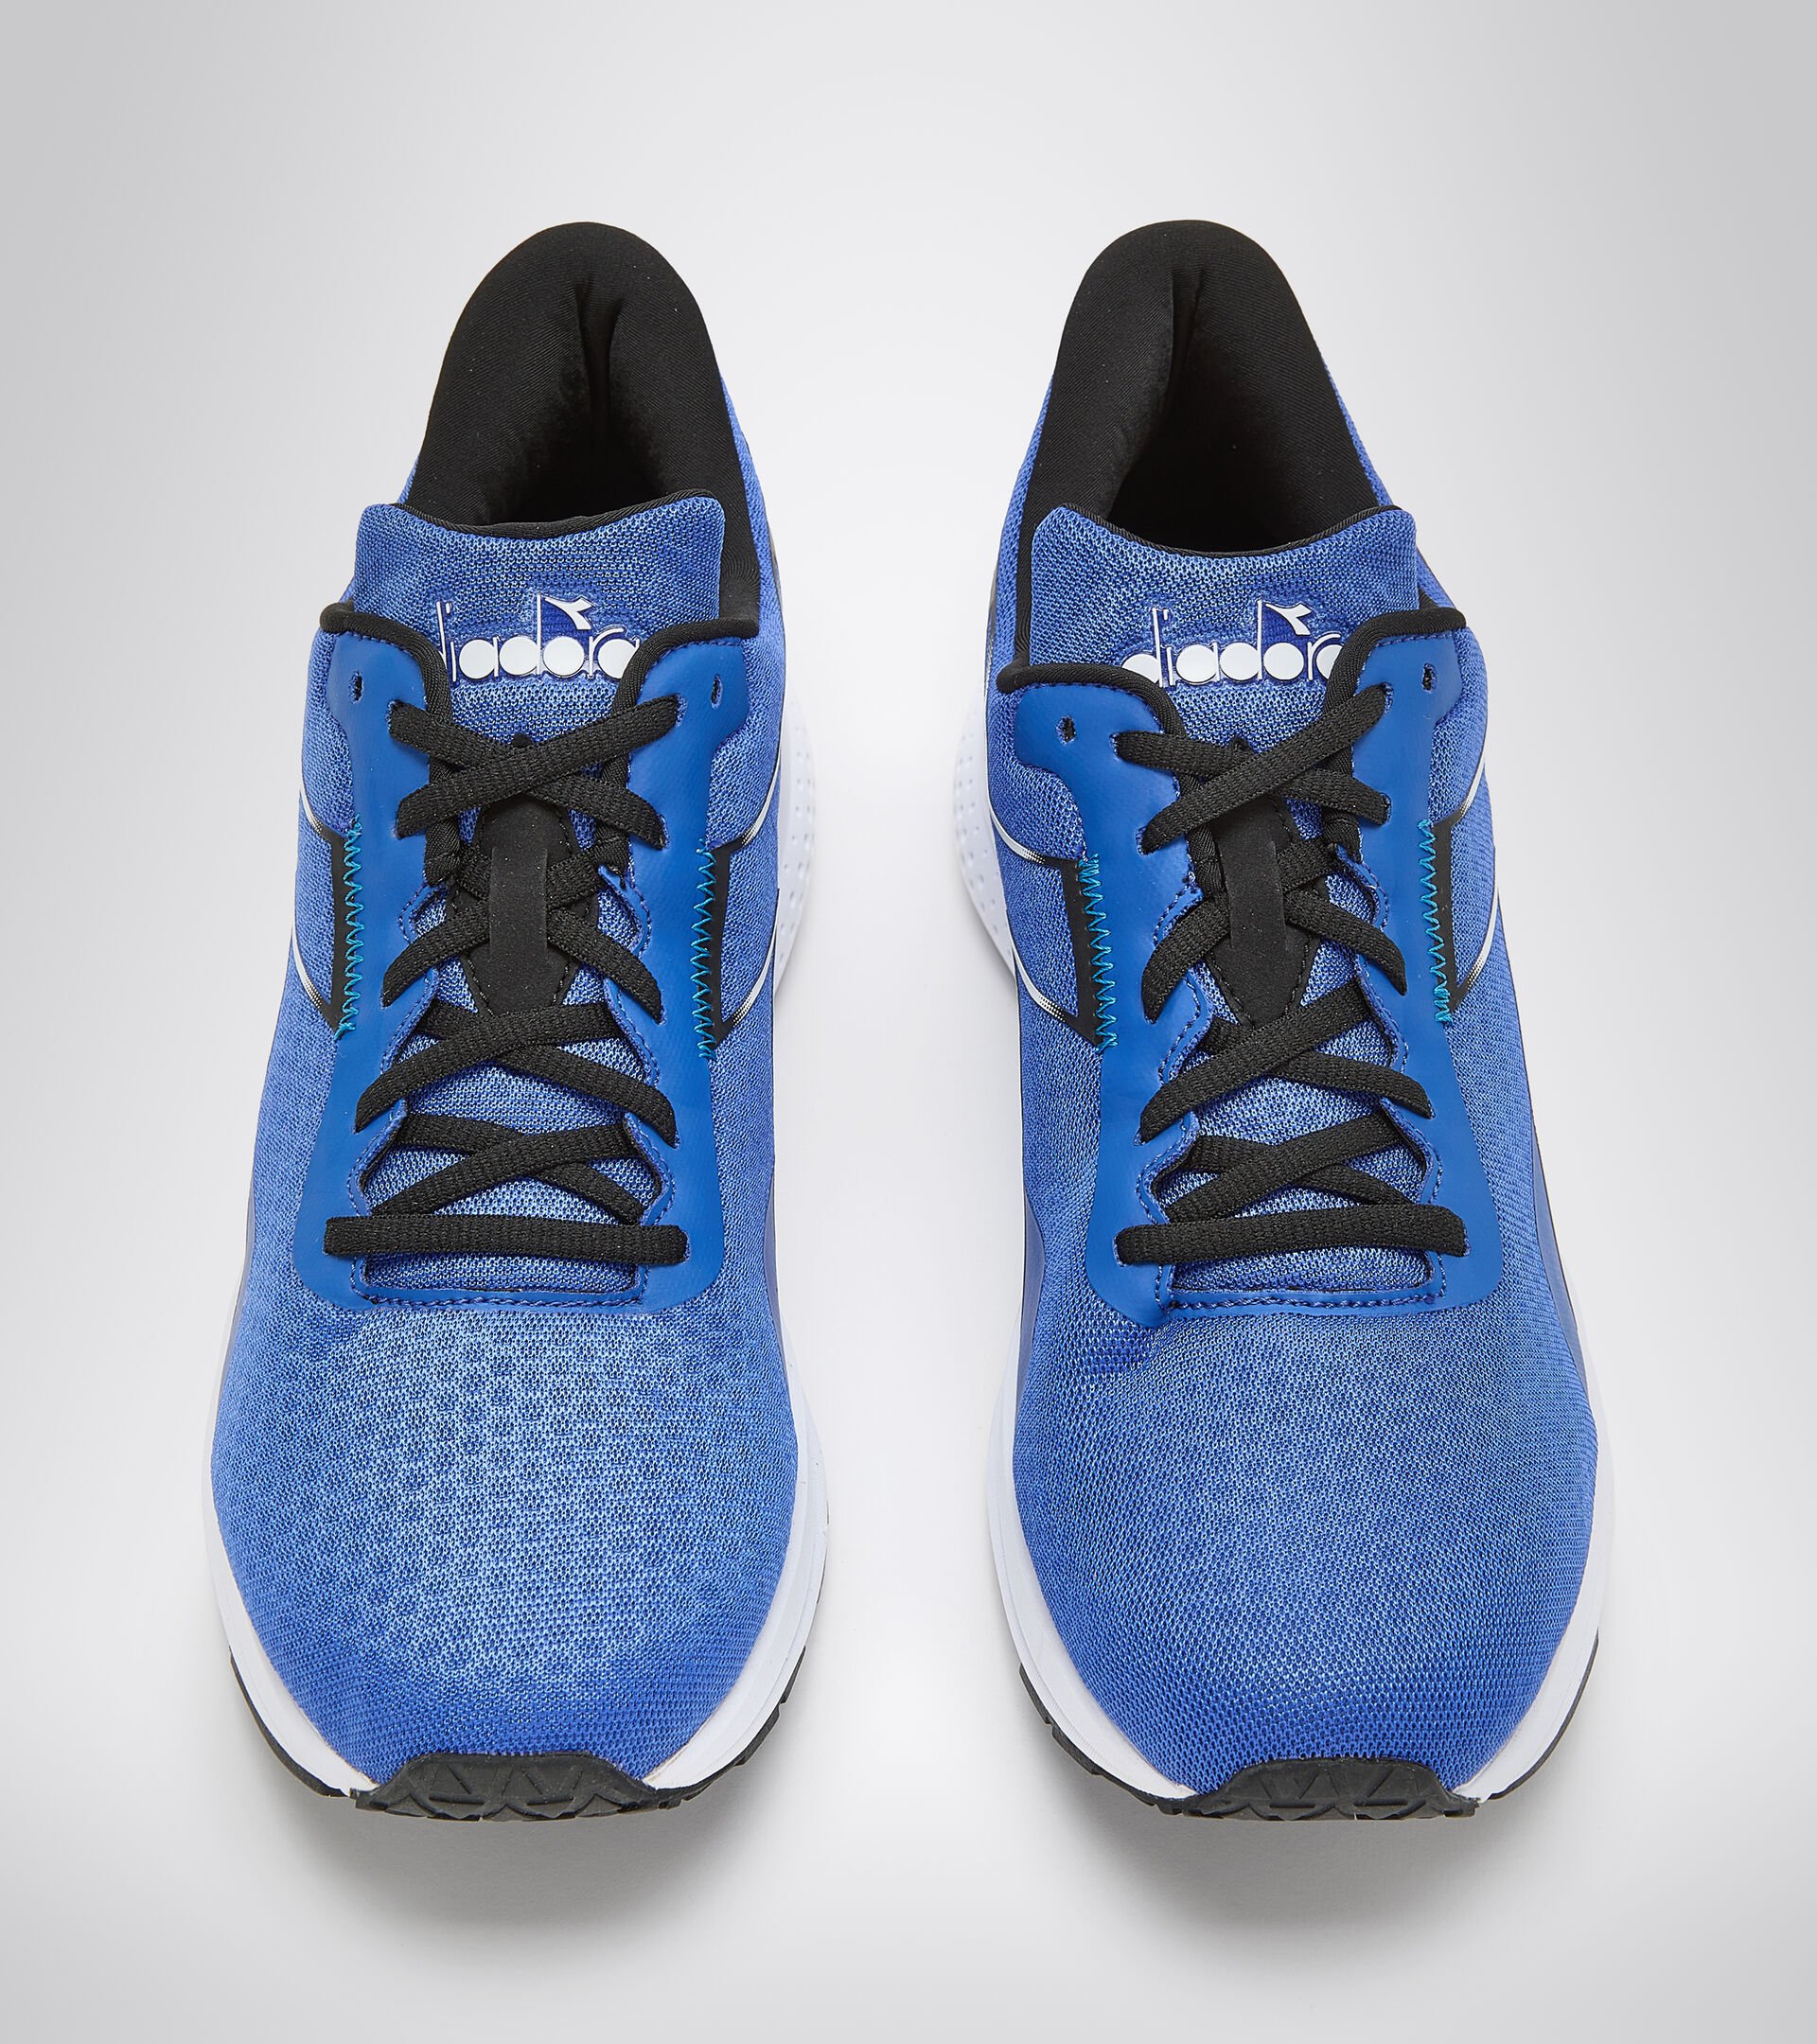 Chaussures de running - Homme PASSO 2 TURC MER BLEU/NOIR - Diadora